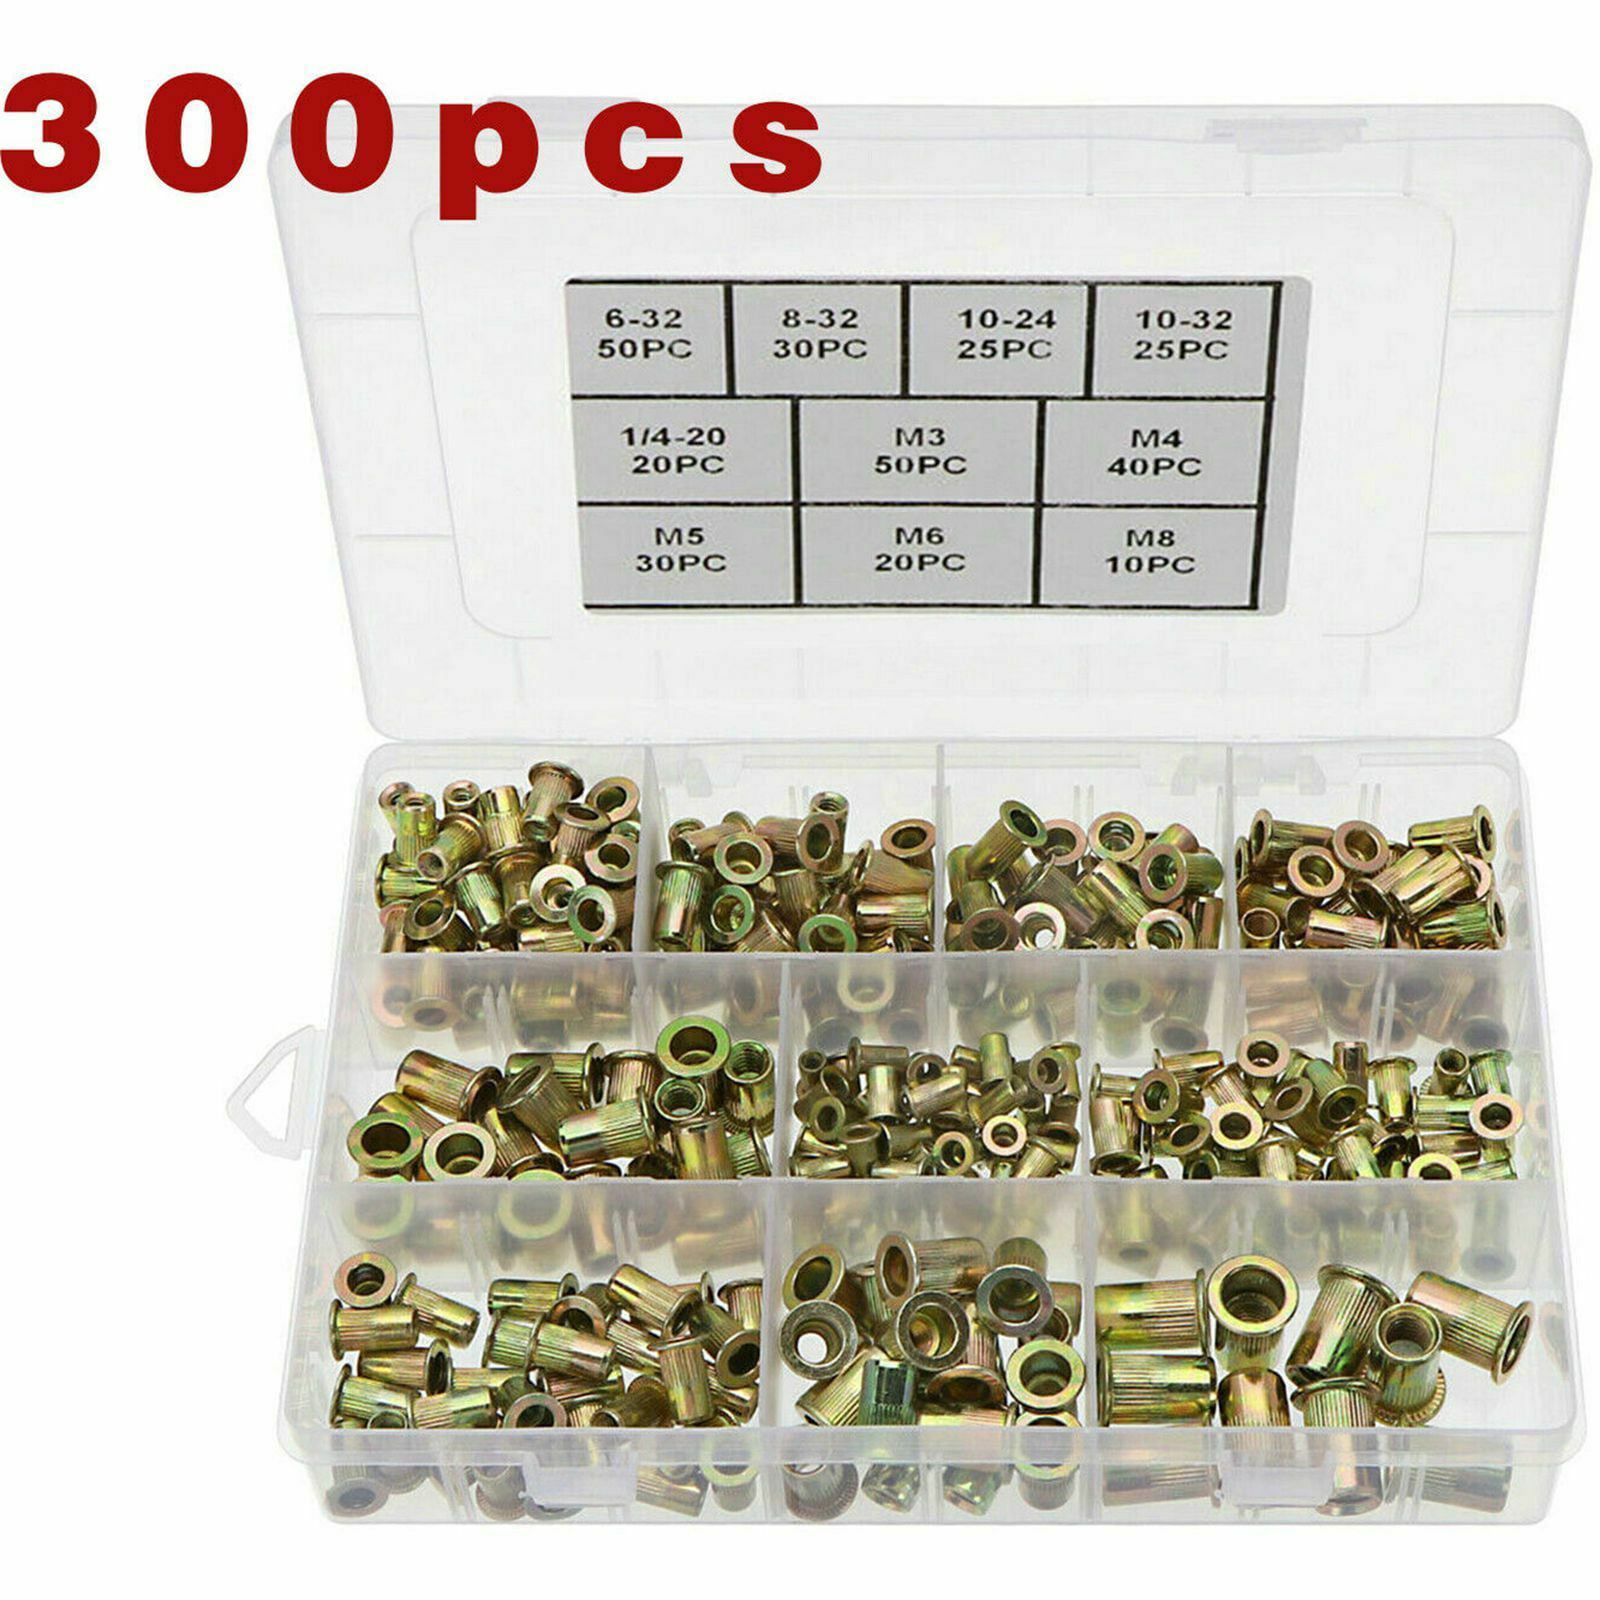 300 pcs Zinc Steel Rivet Nut Kit Rivnut Nutsert Assort 150pcs Metric+150pcs SAE 